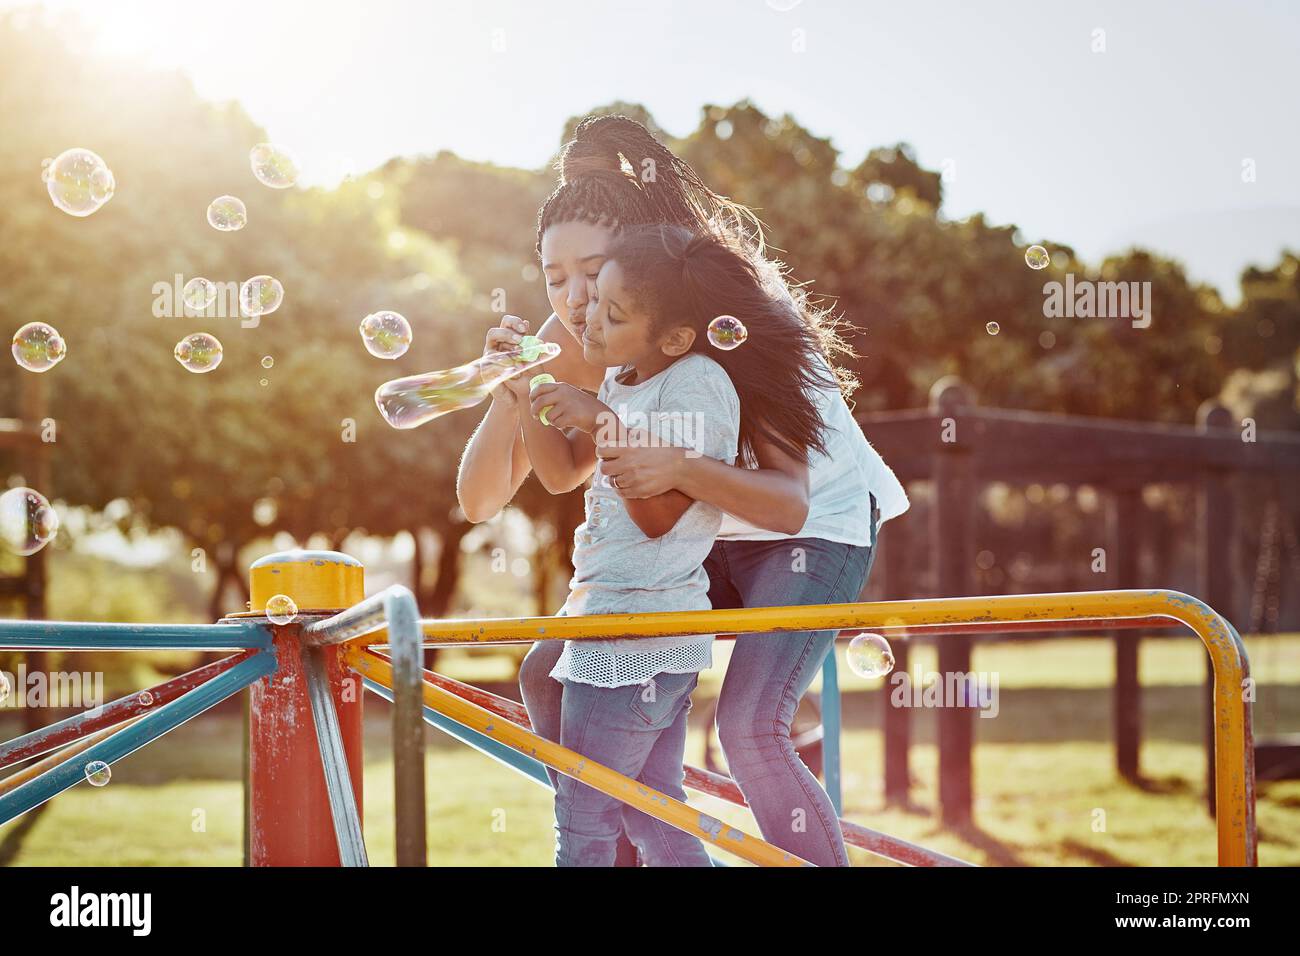 Blasen machen die Welt heller. Eine Mutter und ihre Tochter blasen Blasen im Park. Stockfoto